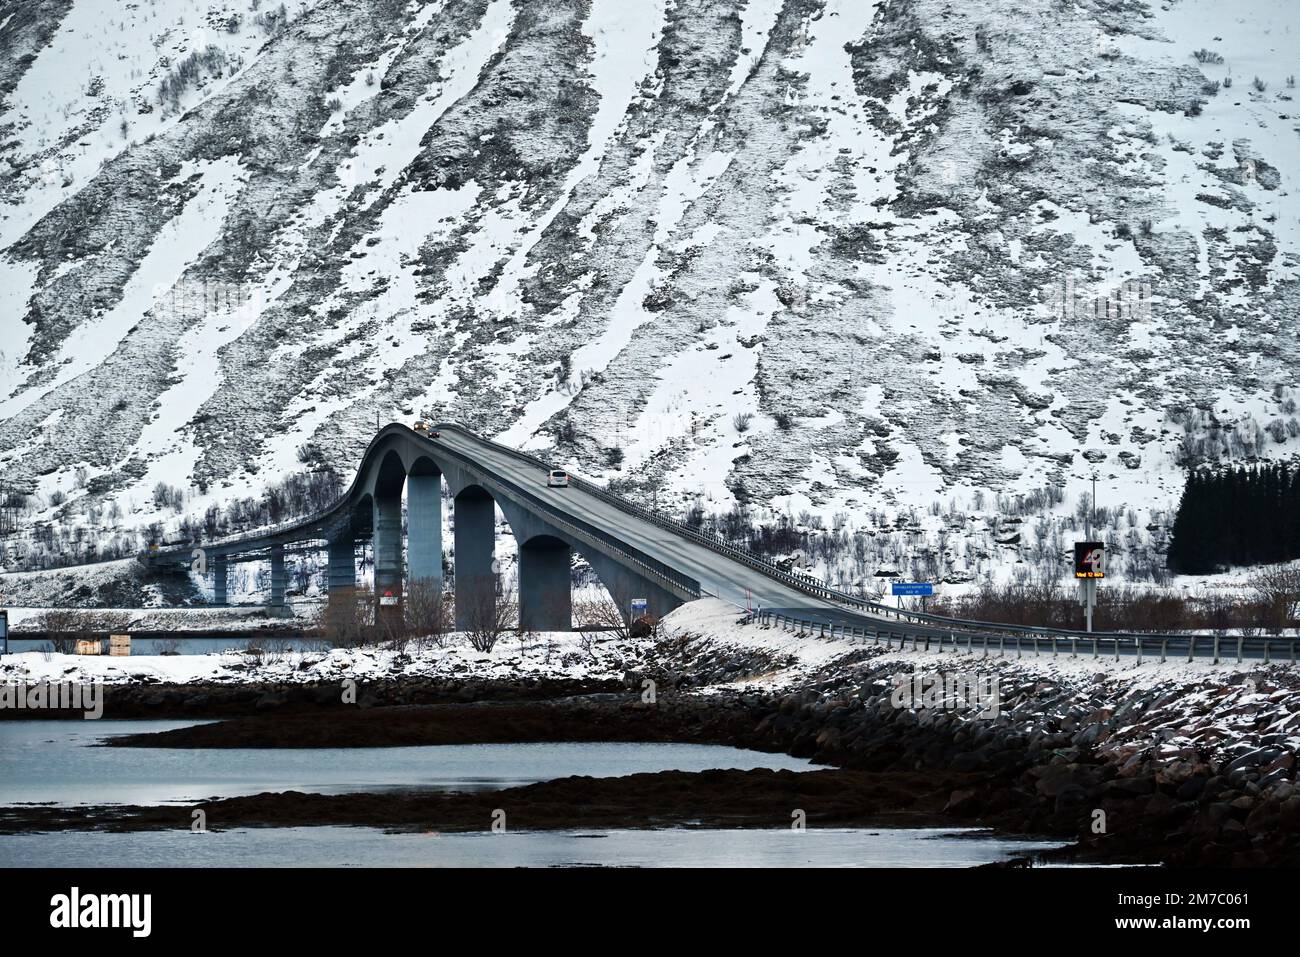 Le pont de Gimsoysaumen est situé dans la péninsule de Lofoten, à l'extrême nord de la Norvège. C'est l'un des nombreux ponts construits dans la péninsule de Lofoten. Banque D'Images